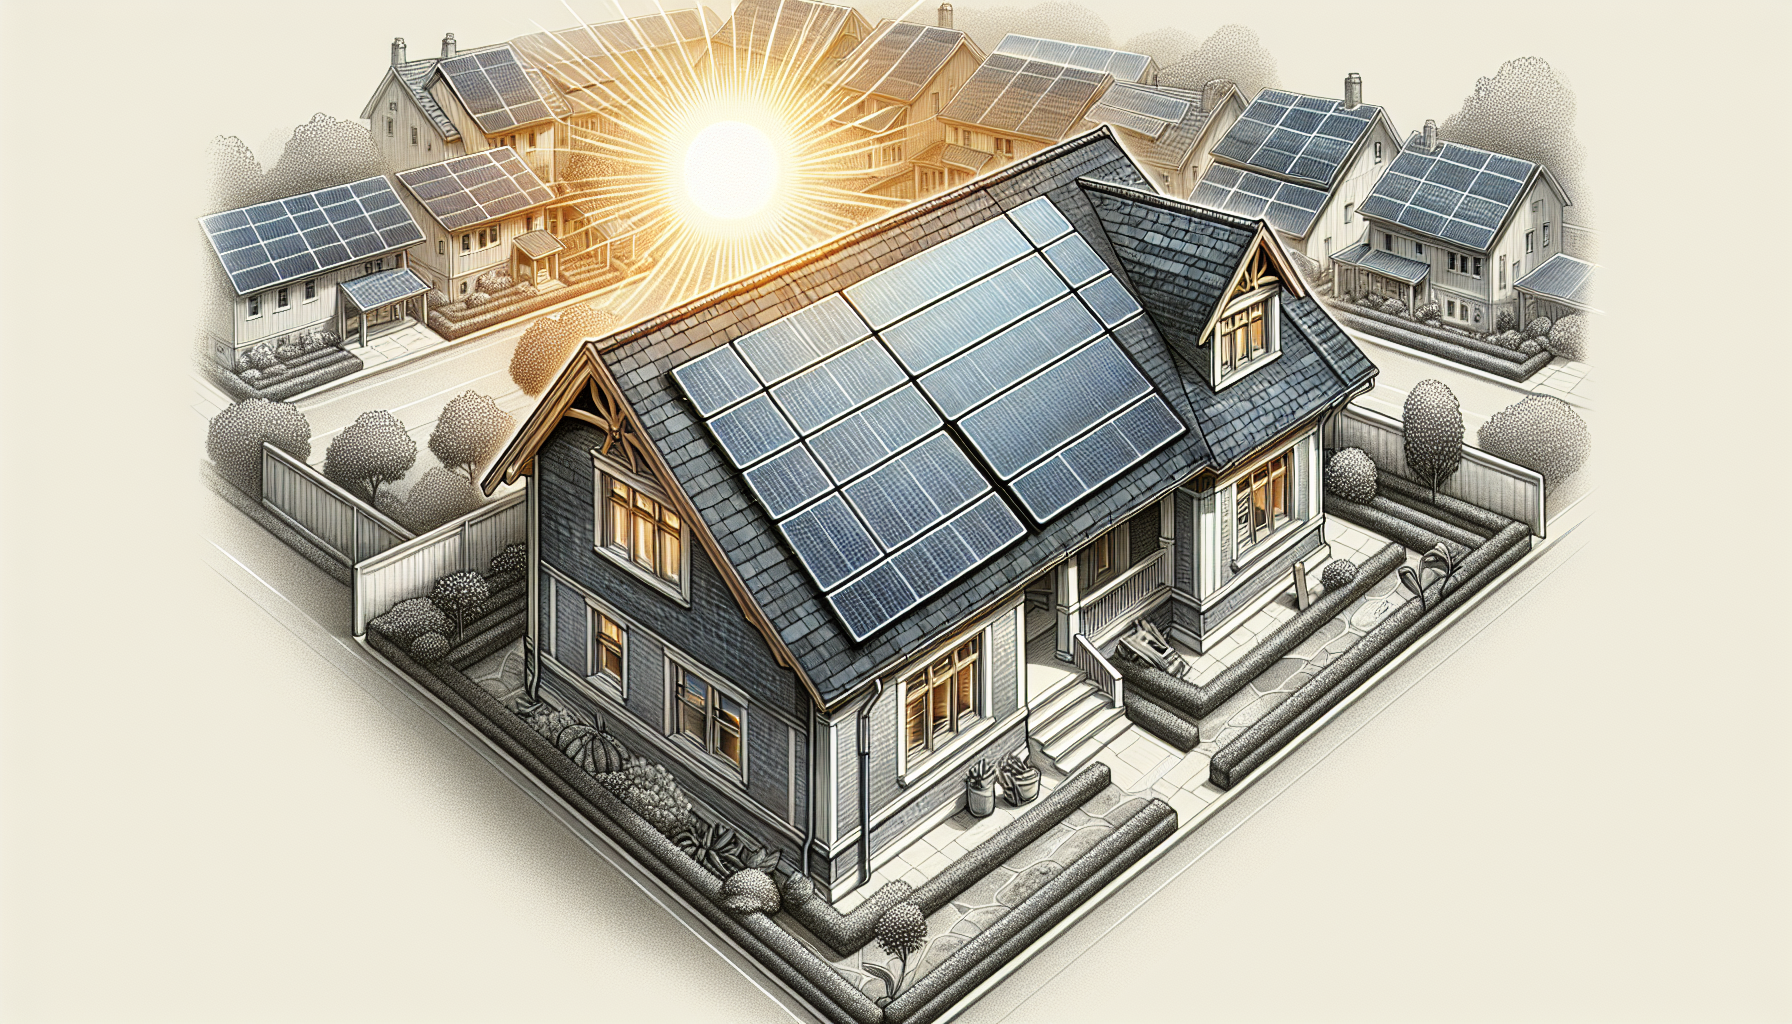 Dachsanierung und Photovoltaik: Eine gewinnbringende Verbindung - Illustration eines Hauses mit Solaranlagen auf dem Dach